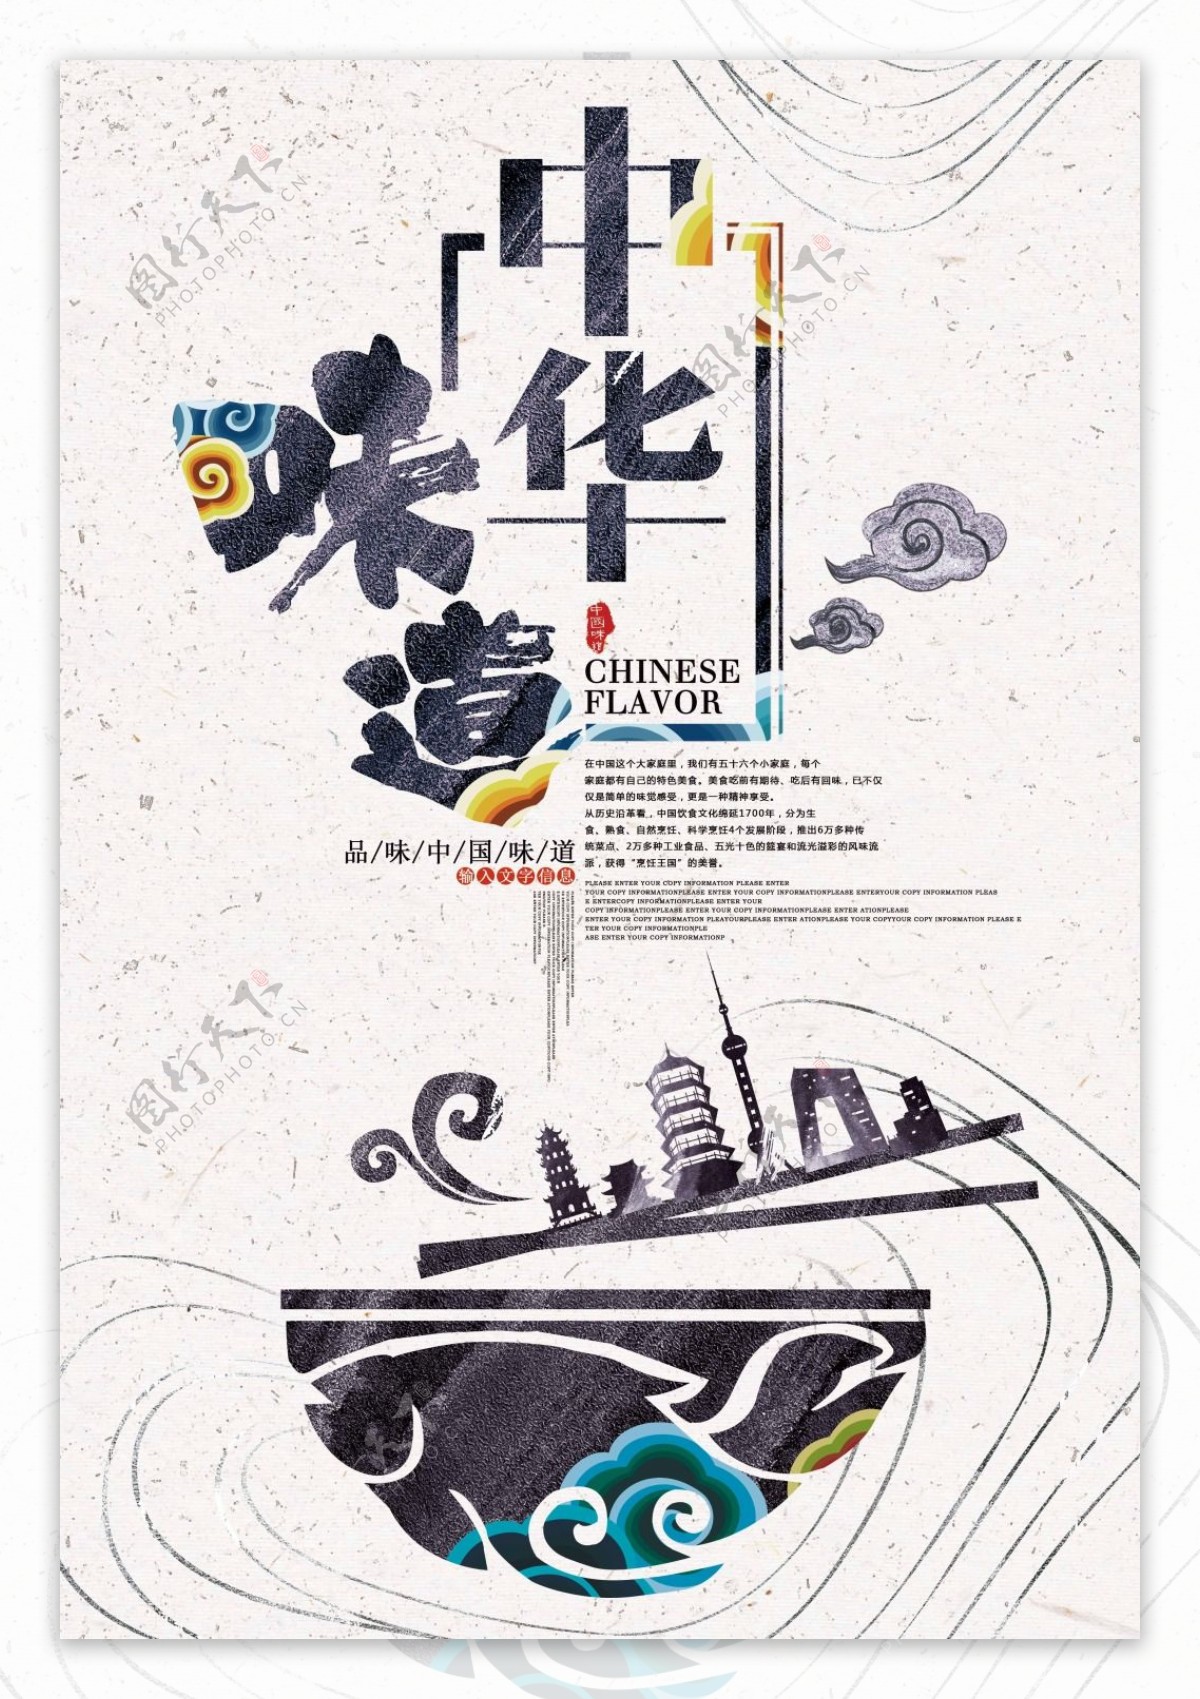 简约创意中国风中华味道美食海报设计